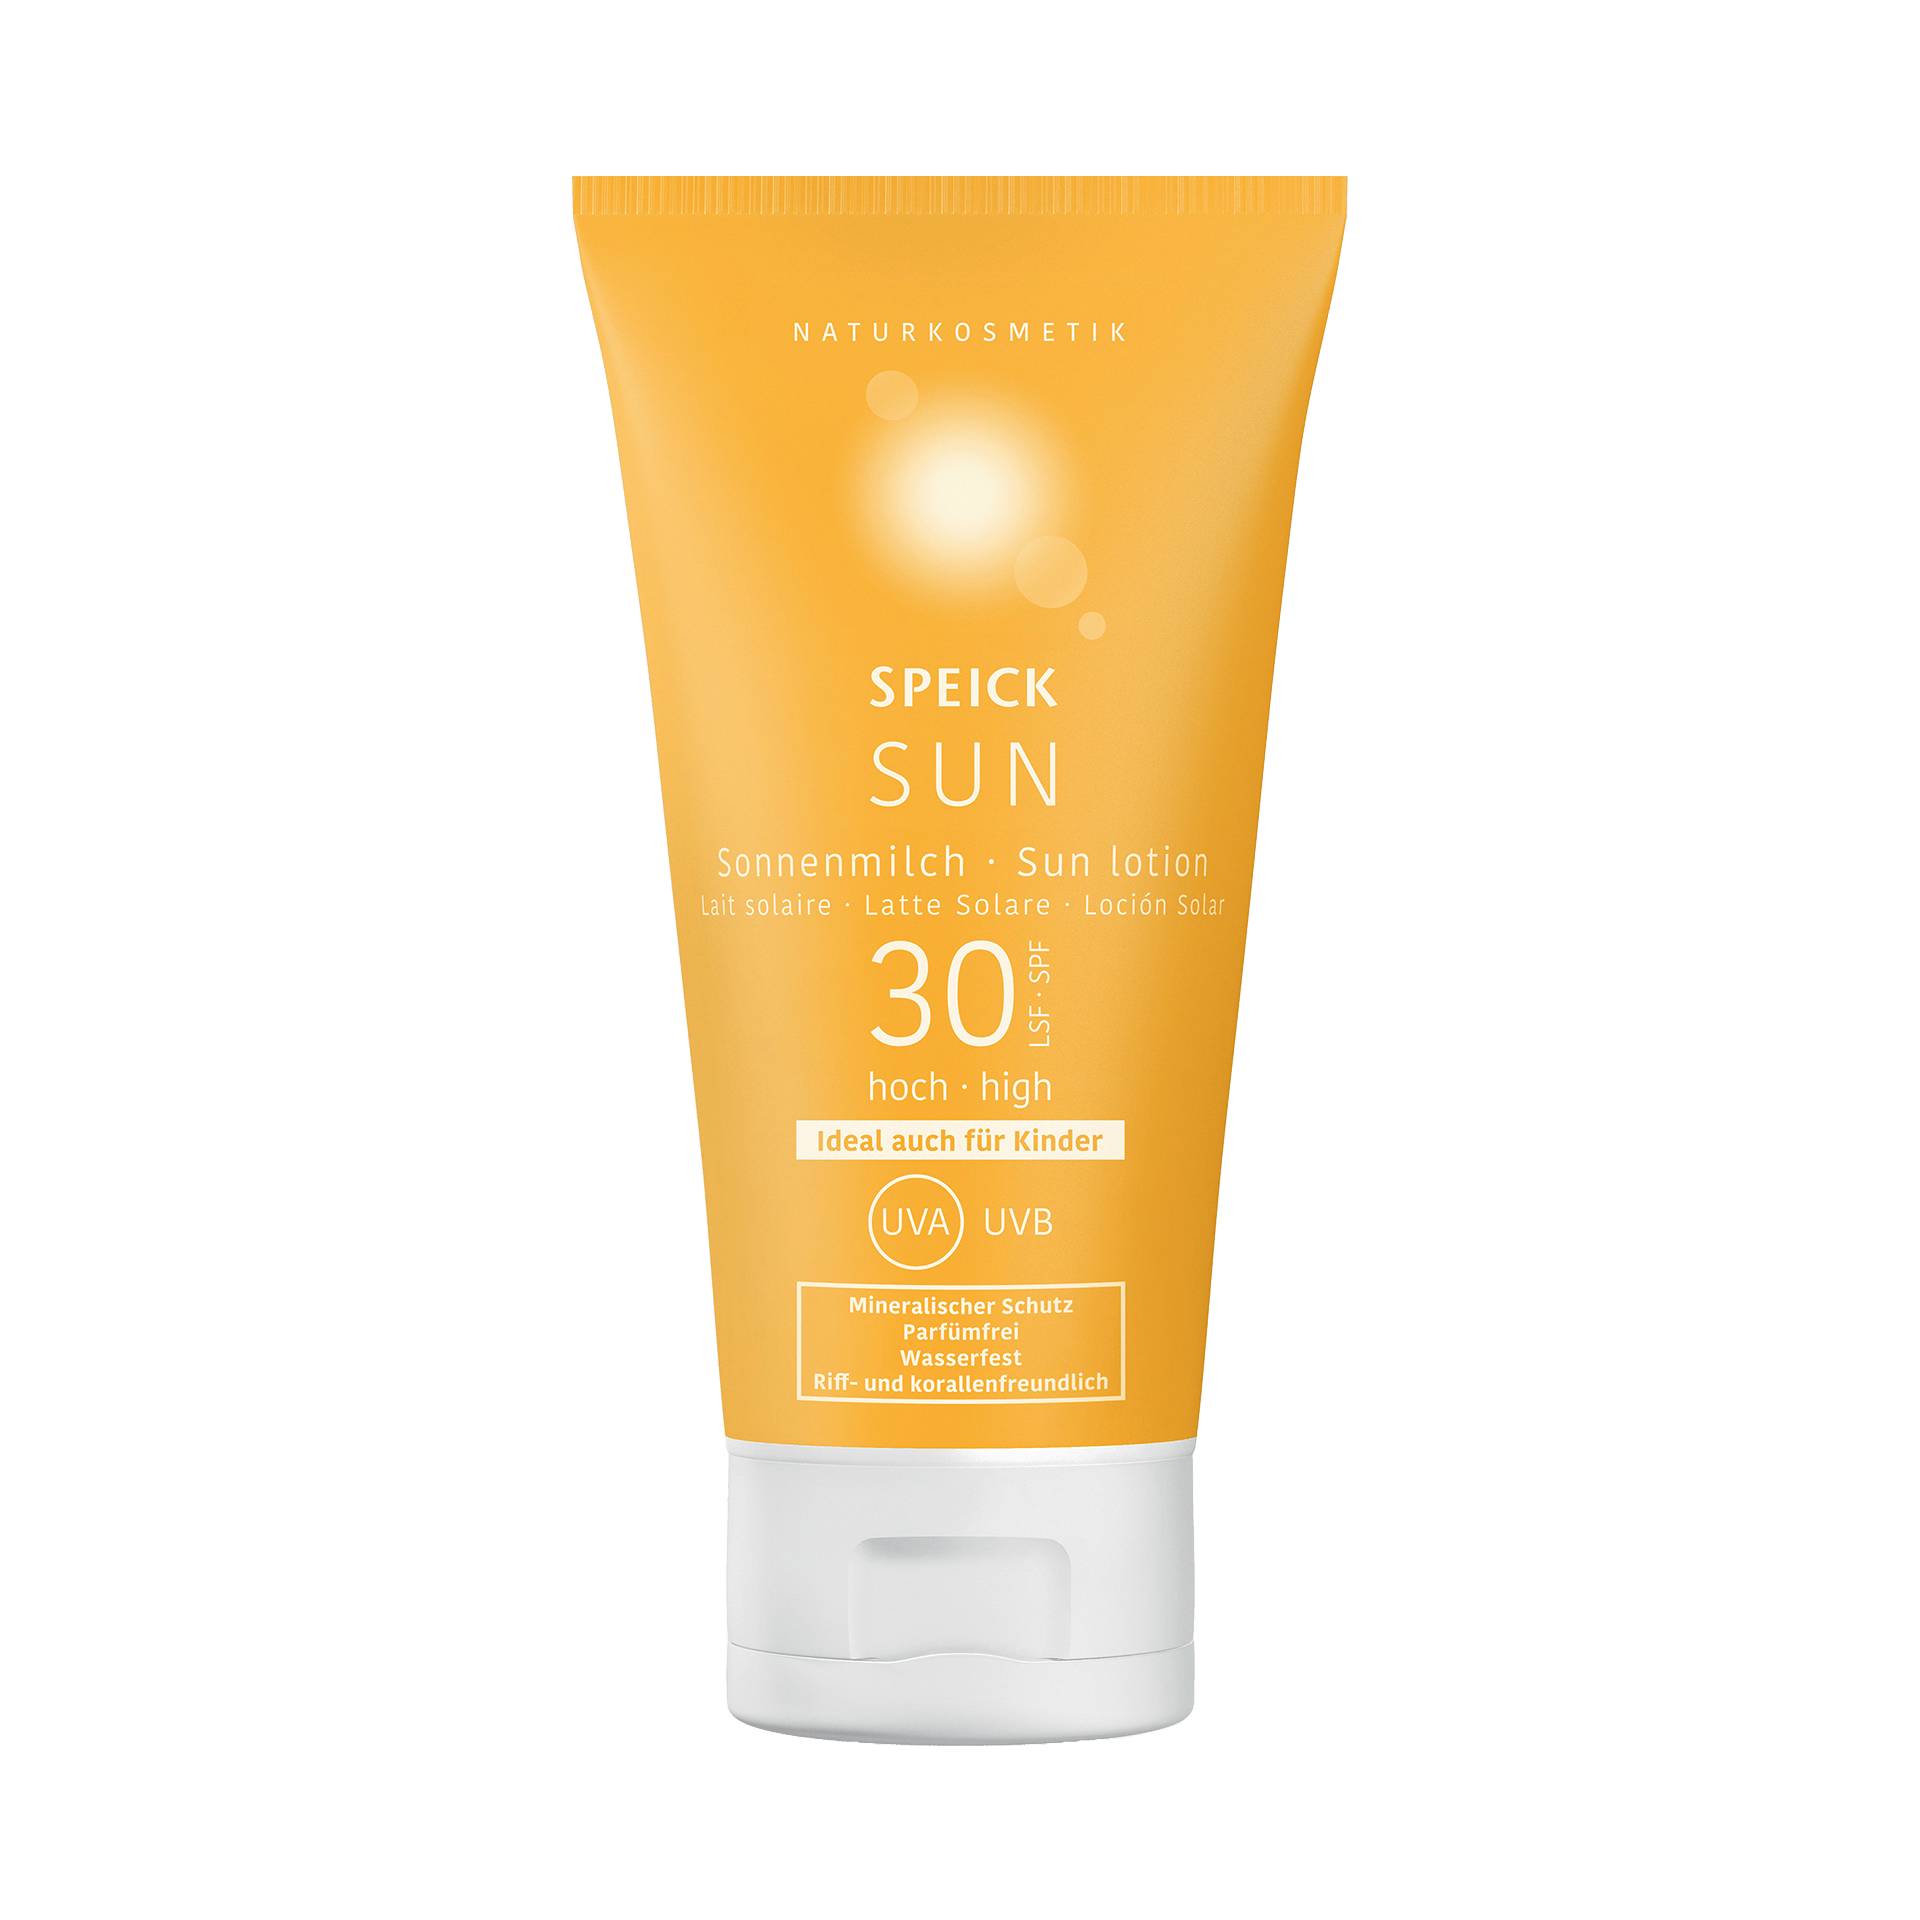 Speick Sun Sonnenmilch LSF 30 150 ml - Natürlich-mineralischer Sonnenschutz - Speick Naturkosmetik von Speick Naturkosmetik